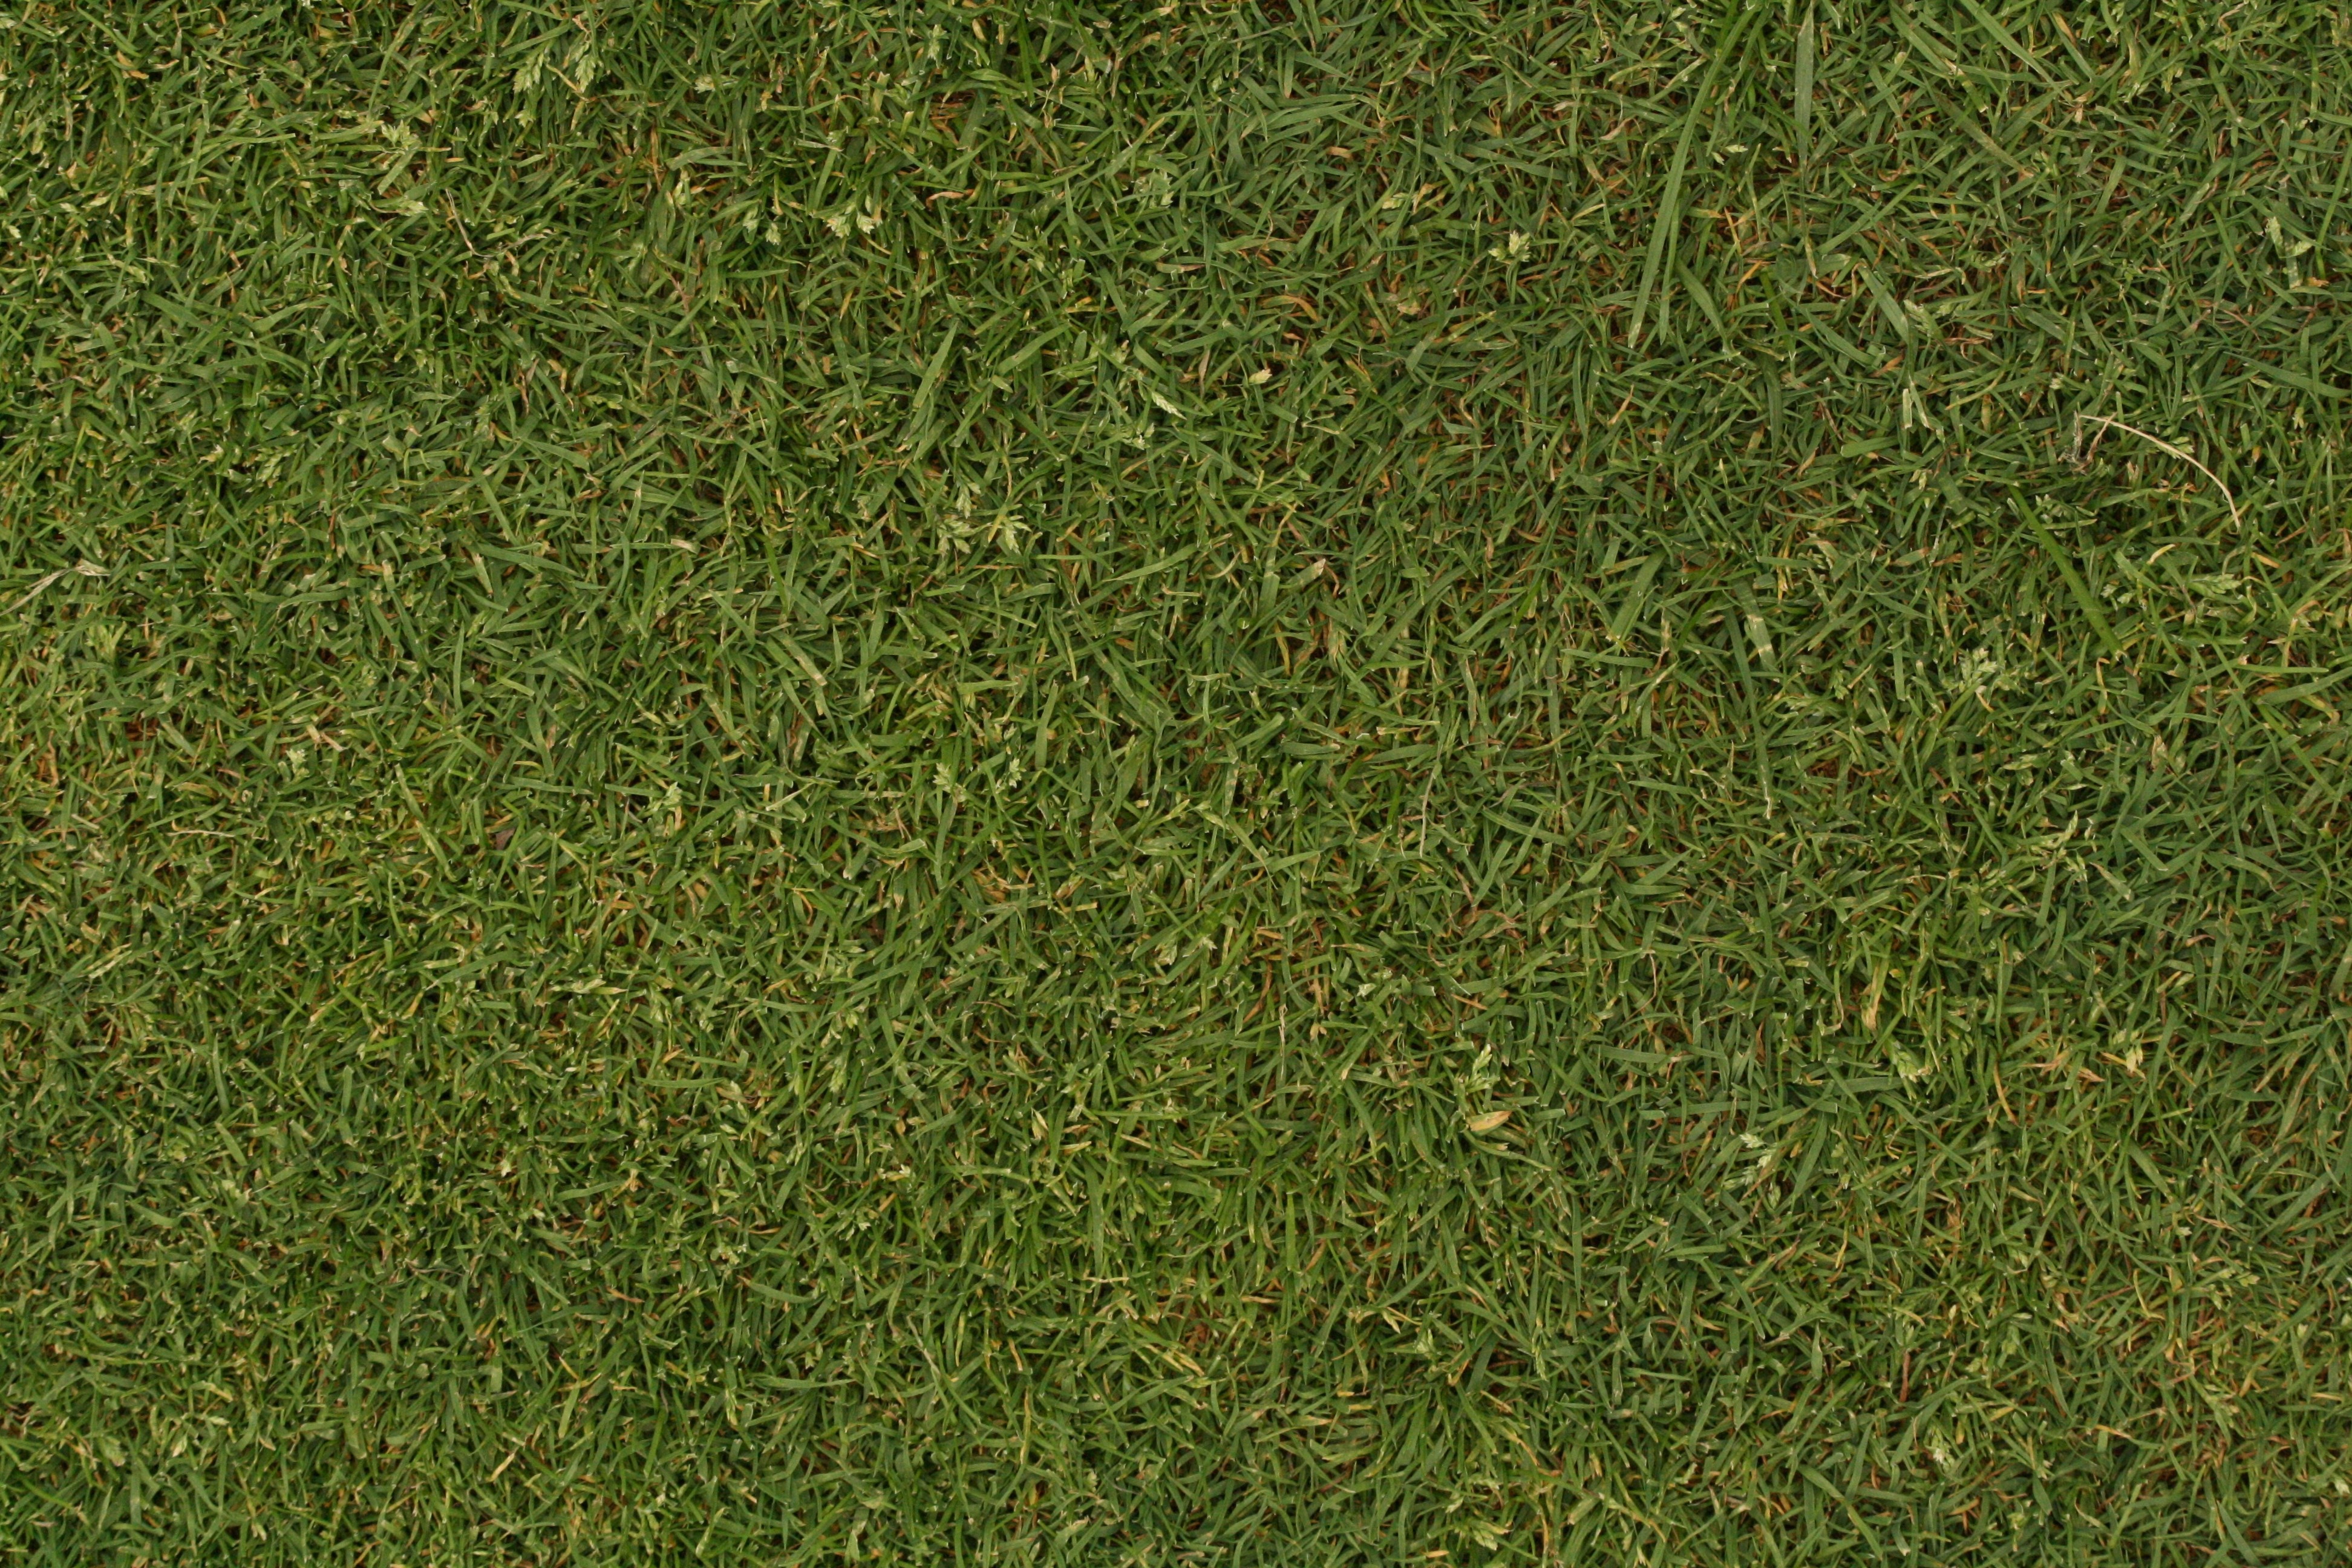 Free Photo Grass Texture Grass Green Lawn Free Download Jooinn 